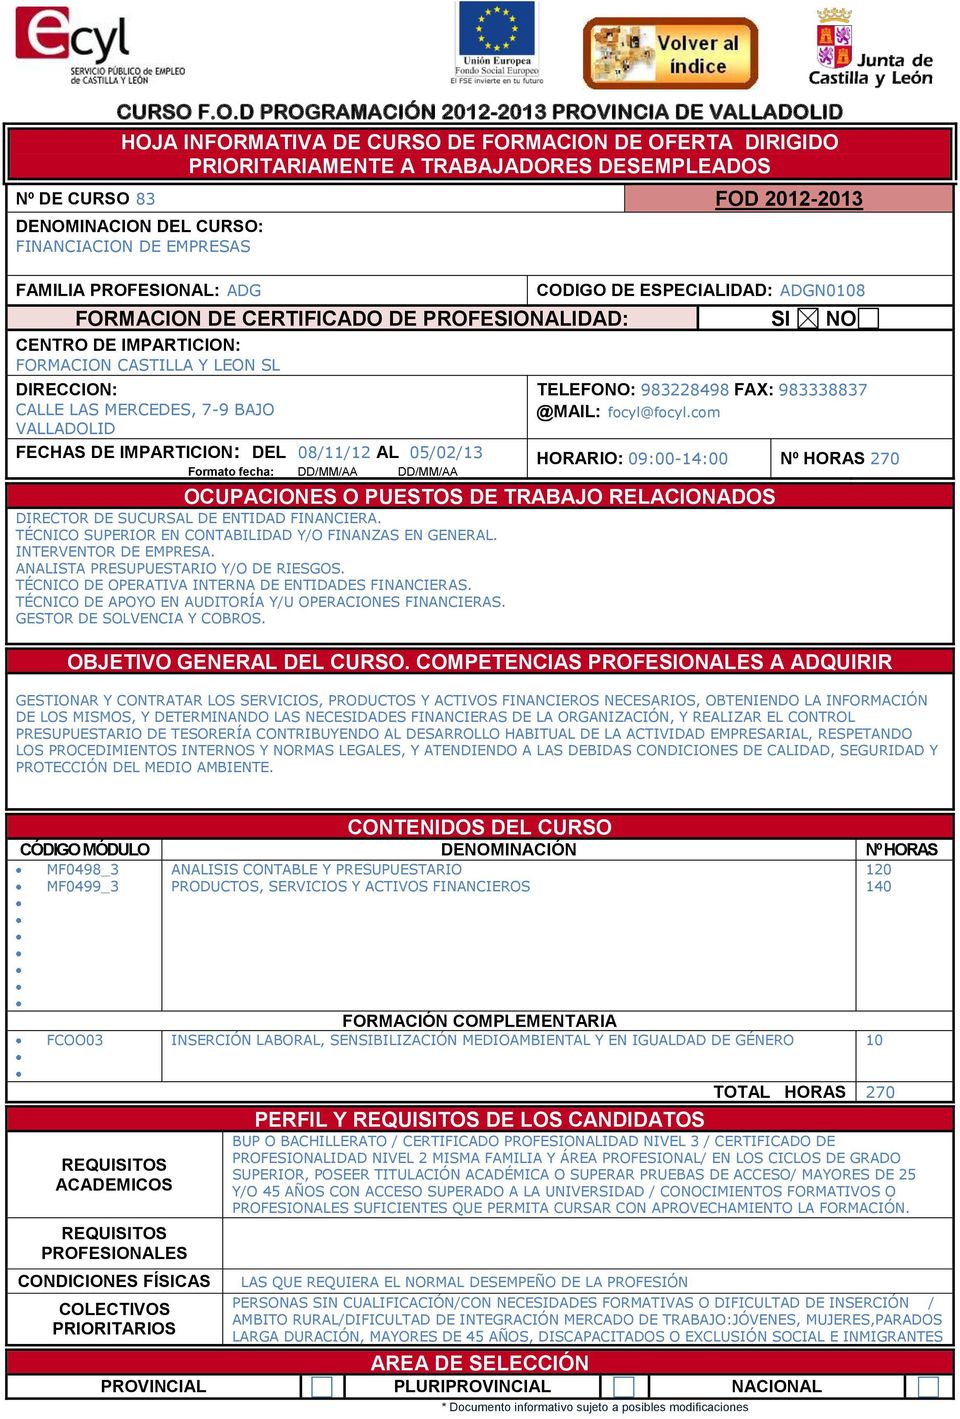 FORMACION CASTILLA Y LEON SL CALLE LAS MERCEDES, 7-9 BAJO FECHAS DE IMPARTICION: DEL 08/11/12 AL 05/02/13 TELEFONO: 983228498 FAX: 983338837 @MAIL: focyl@focyl.